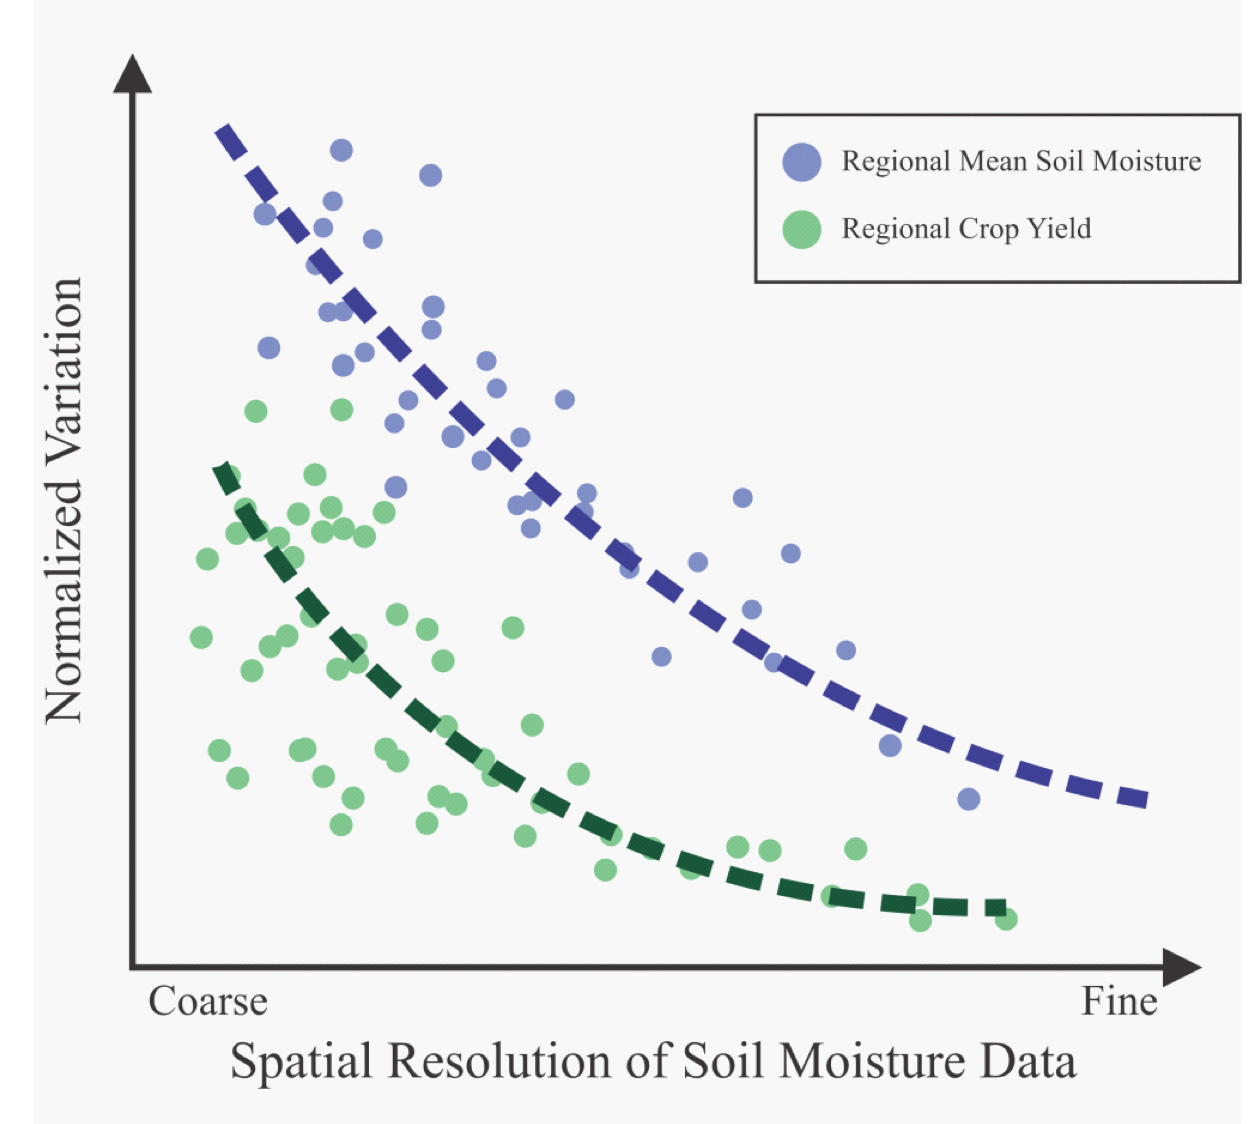 Graph of Variation of Domain-Averaged Soil Moisture